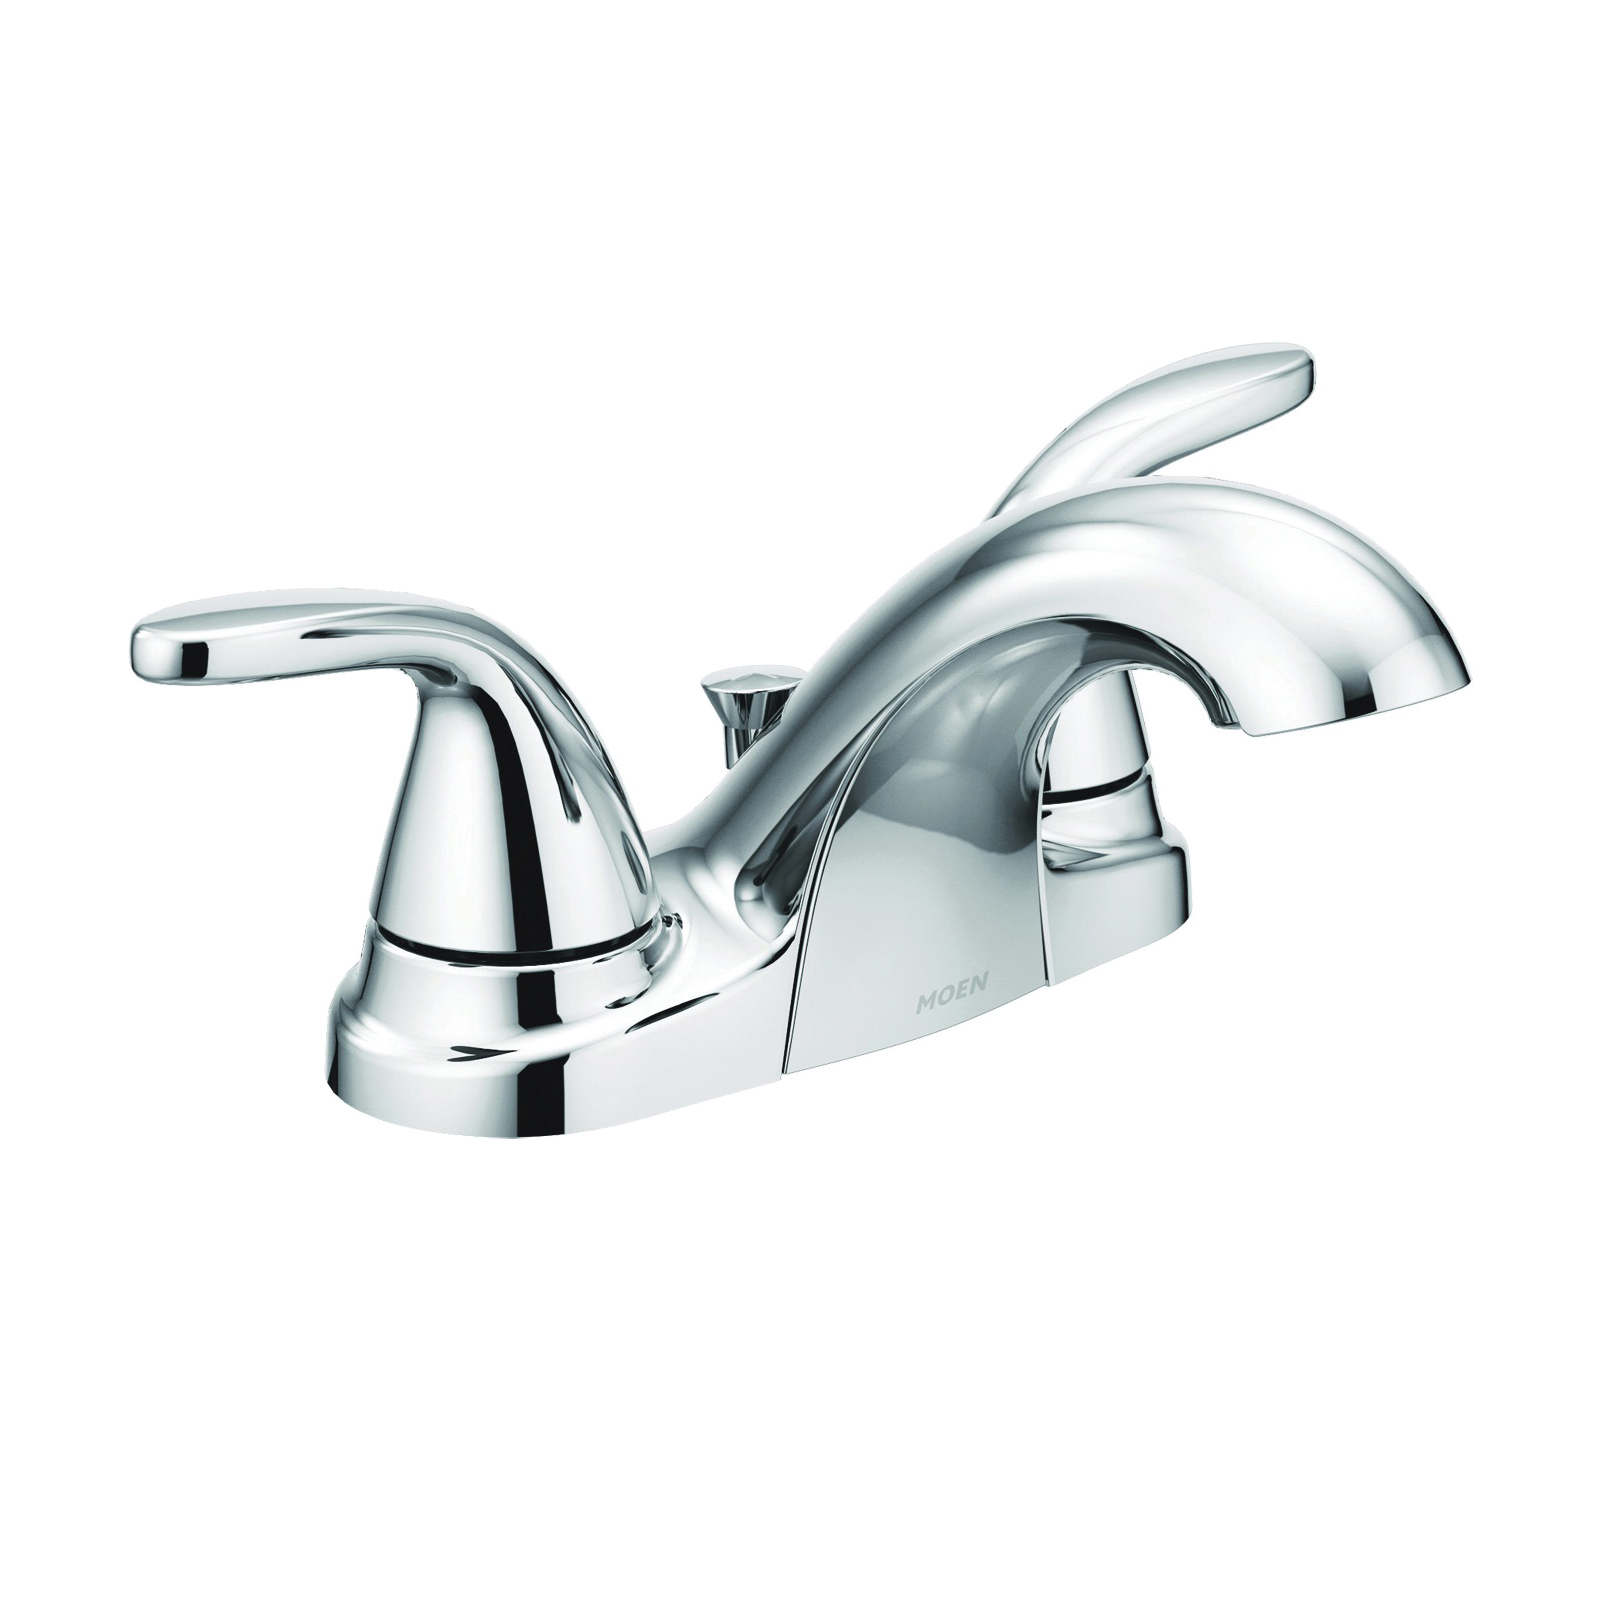 Adler Series 84603 Bathroom Faucet, 1.2 gpm, 2-Faucet Handle, Metal, Chrome Plated, Lever Handle, Low Arc Spout